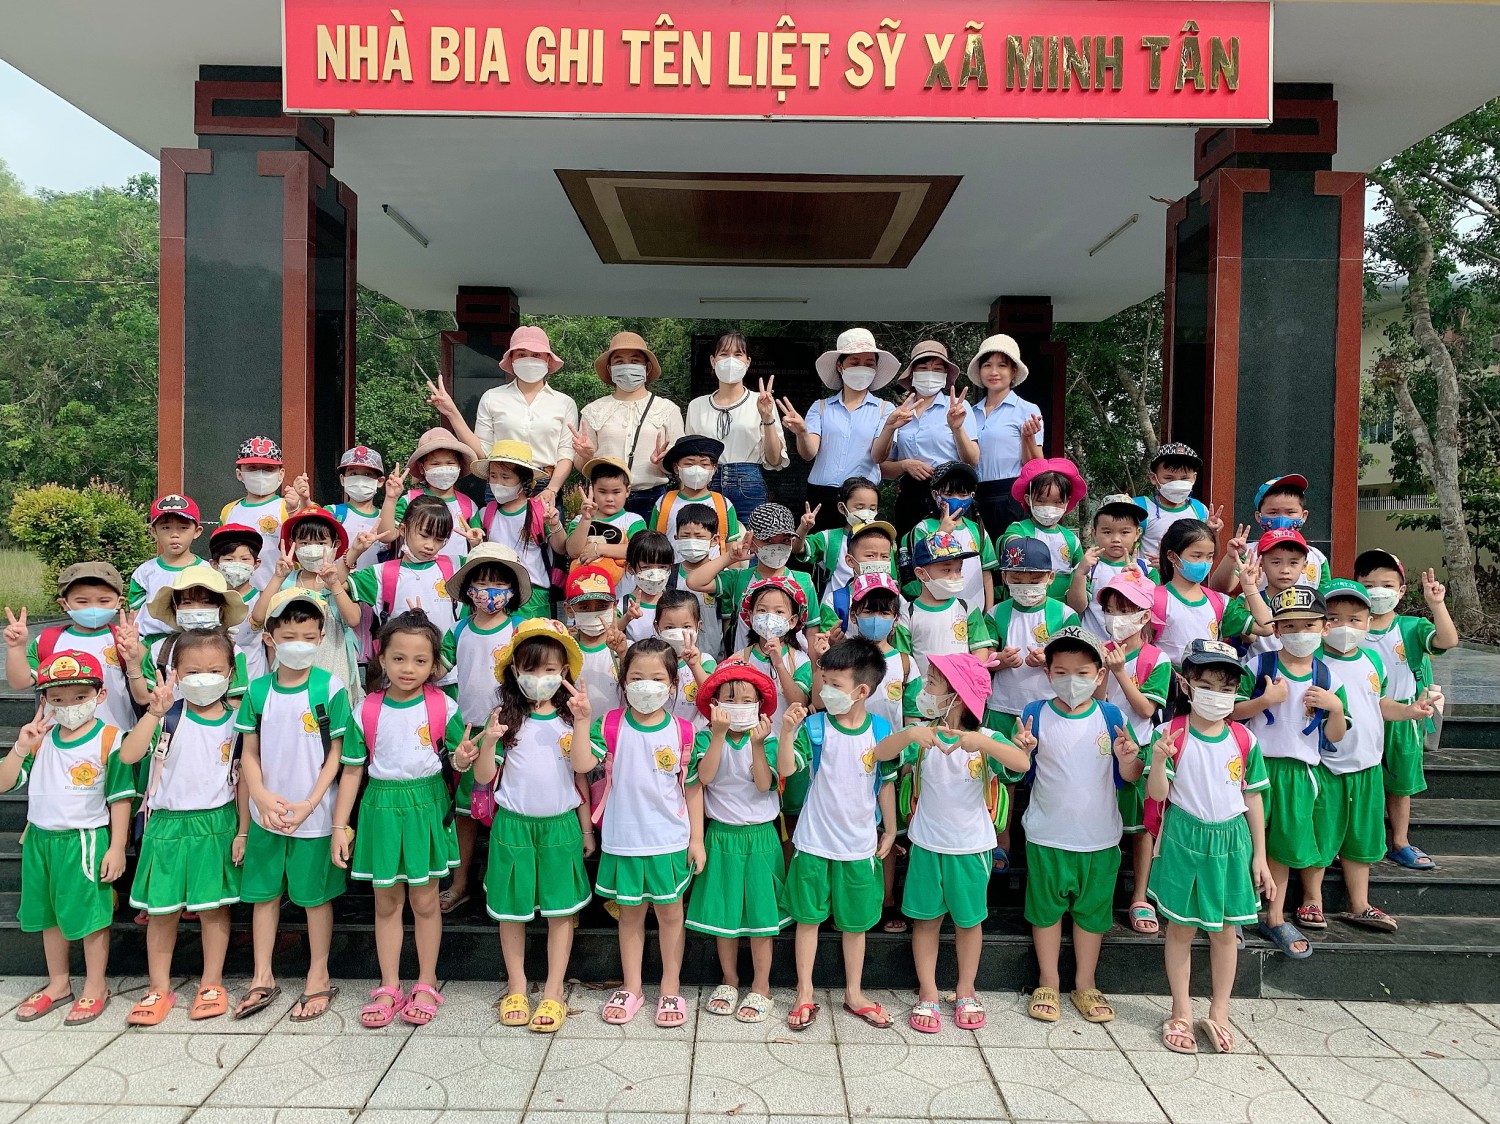 Trẻ 5 tuổi lớp lá thăm quan " Nhà bia ghi tên liệt sỹ xã Minh Tân, Trung tâm văn hóa xã Minh Tân"